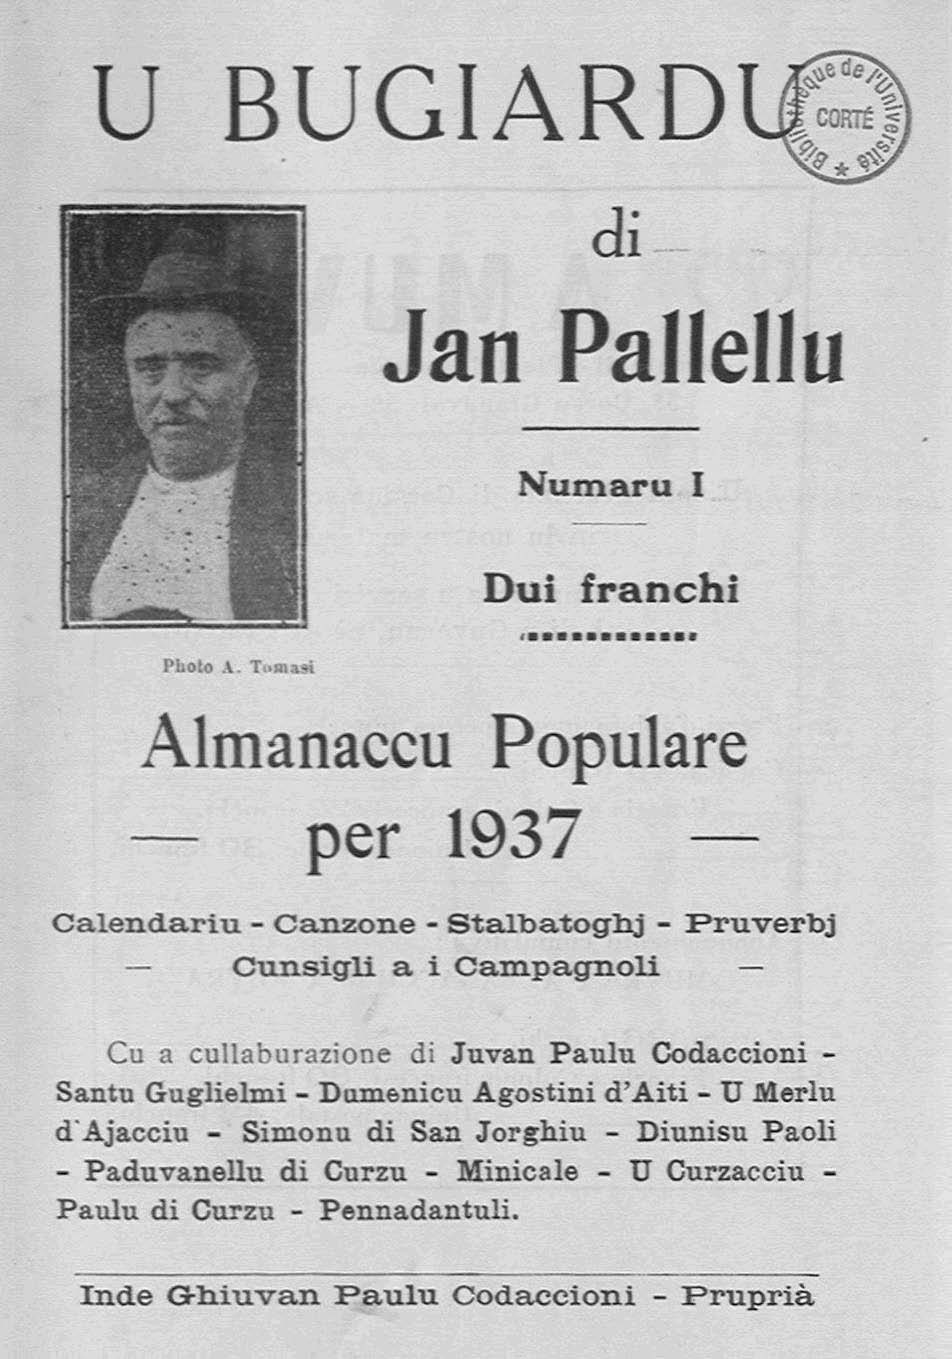 >U Bugiardu di Jan Pallellu (1937)